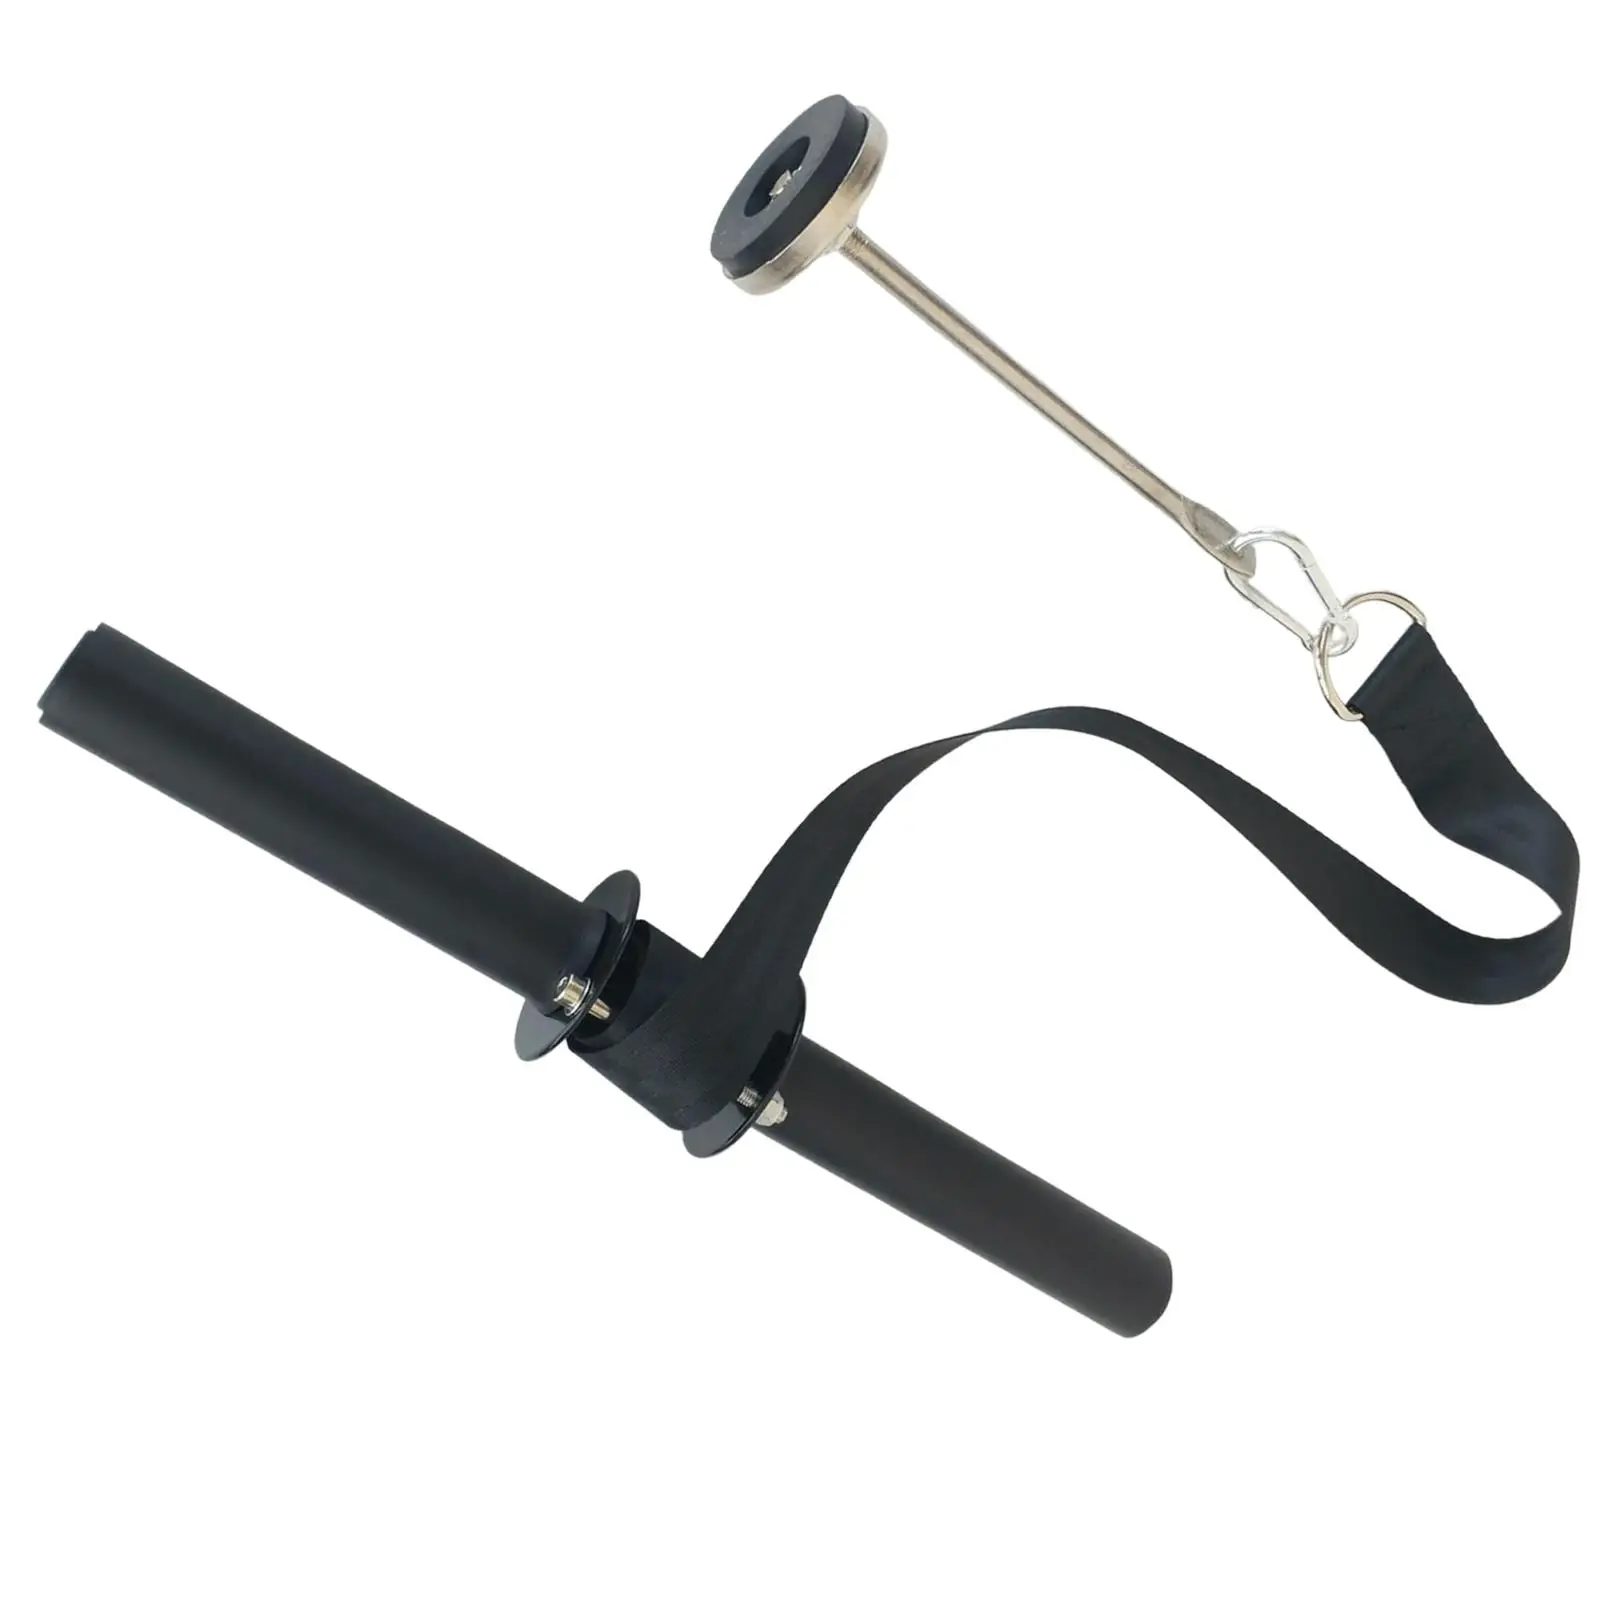 Forearm Blaster Anti-Slip Soft Foam Grip Handles Curler Wrist Roller Strengthener Wrist and Forearm Blaster for Gym Equipment